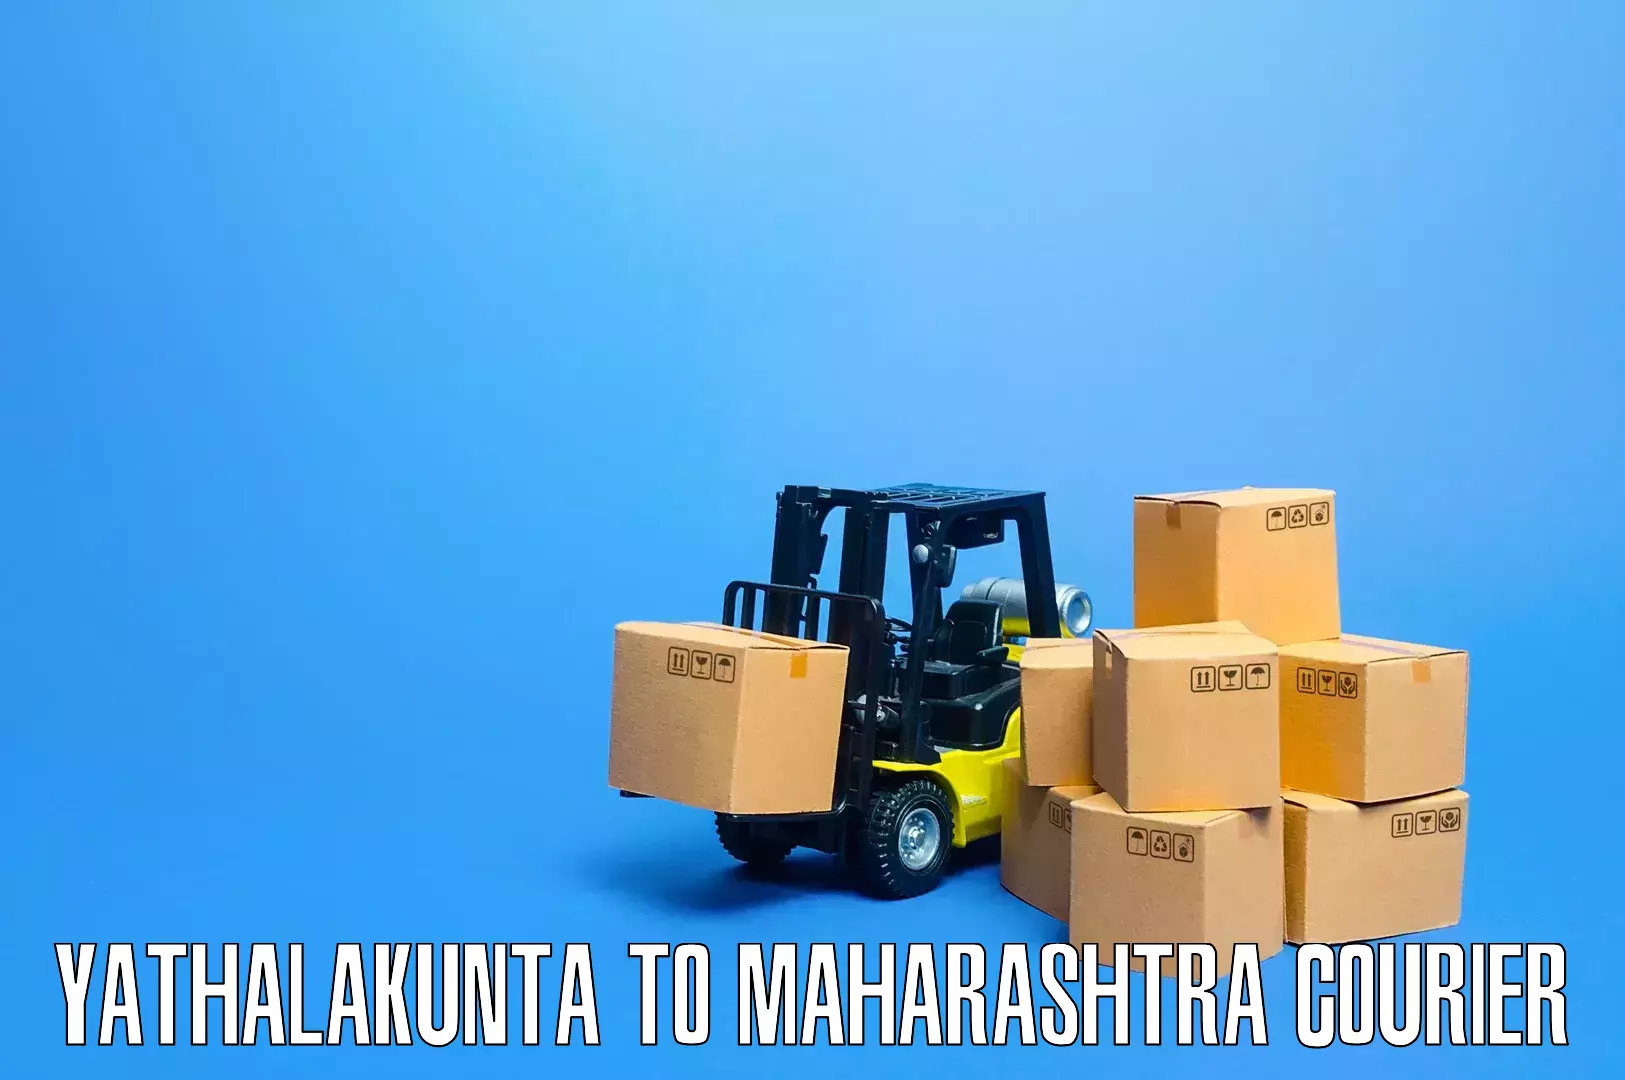 Flexible moving solutions Yathalakunta to Lasalgaon